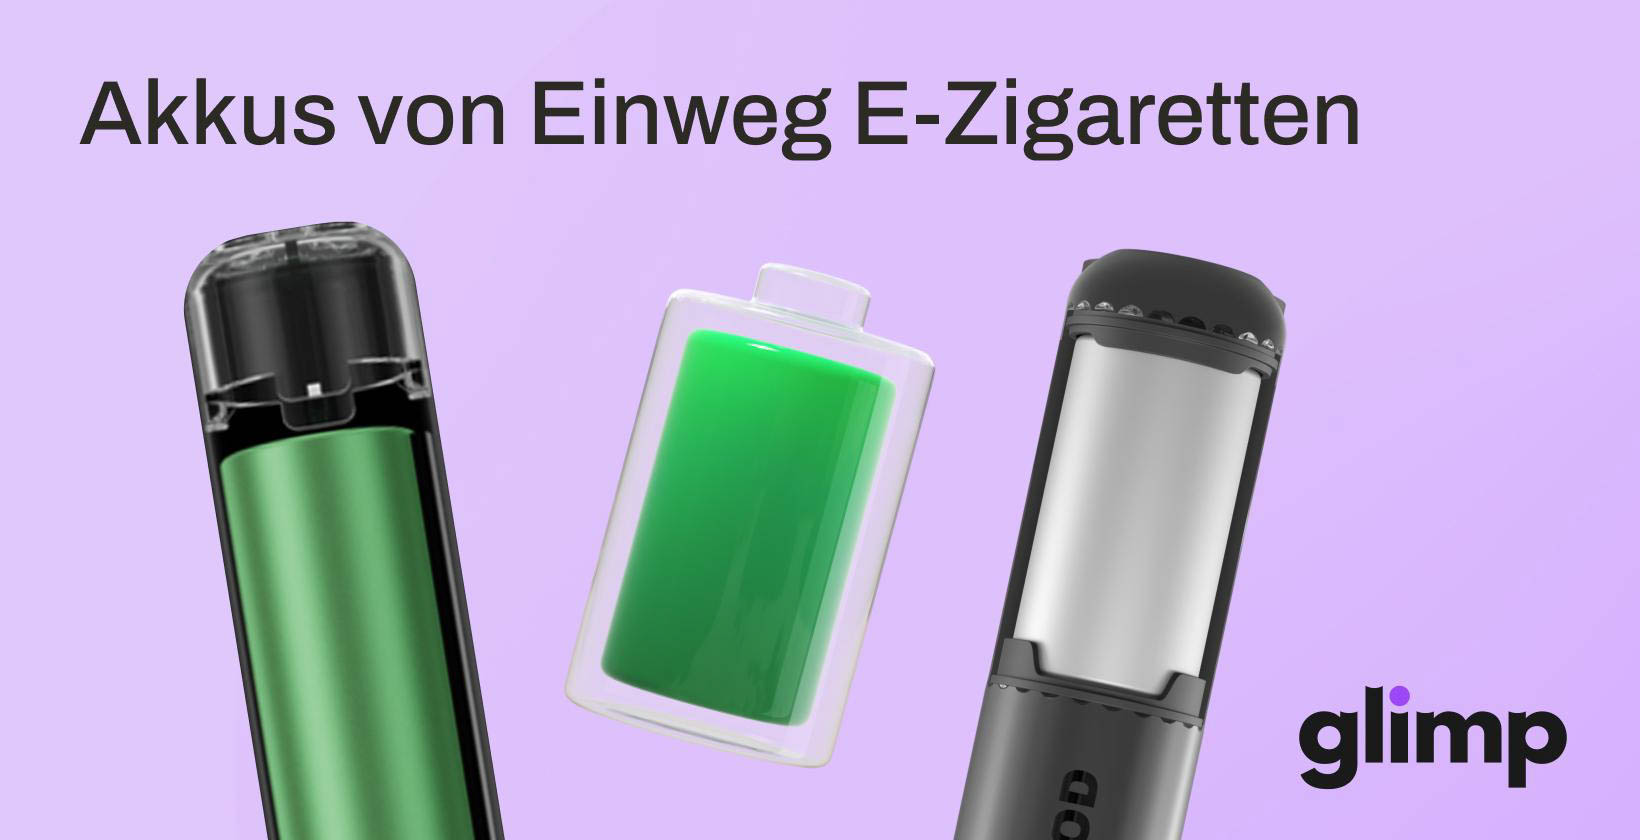 Akkus von Einweg E-Zigaretten: Welche Art von Akkus verwenden Einweg E-Zigaretten?